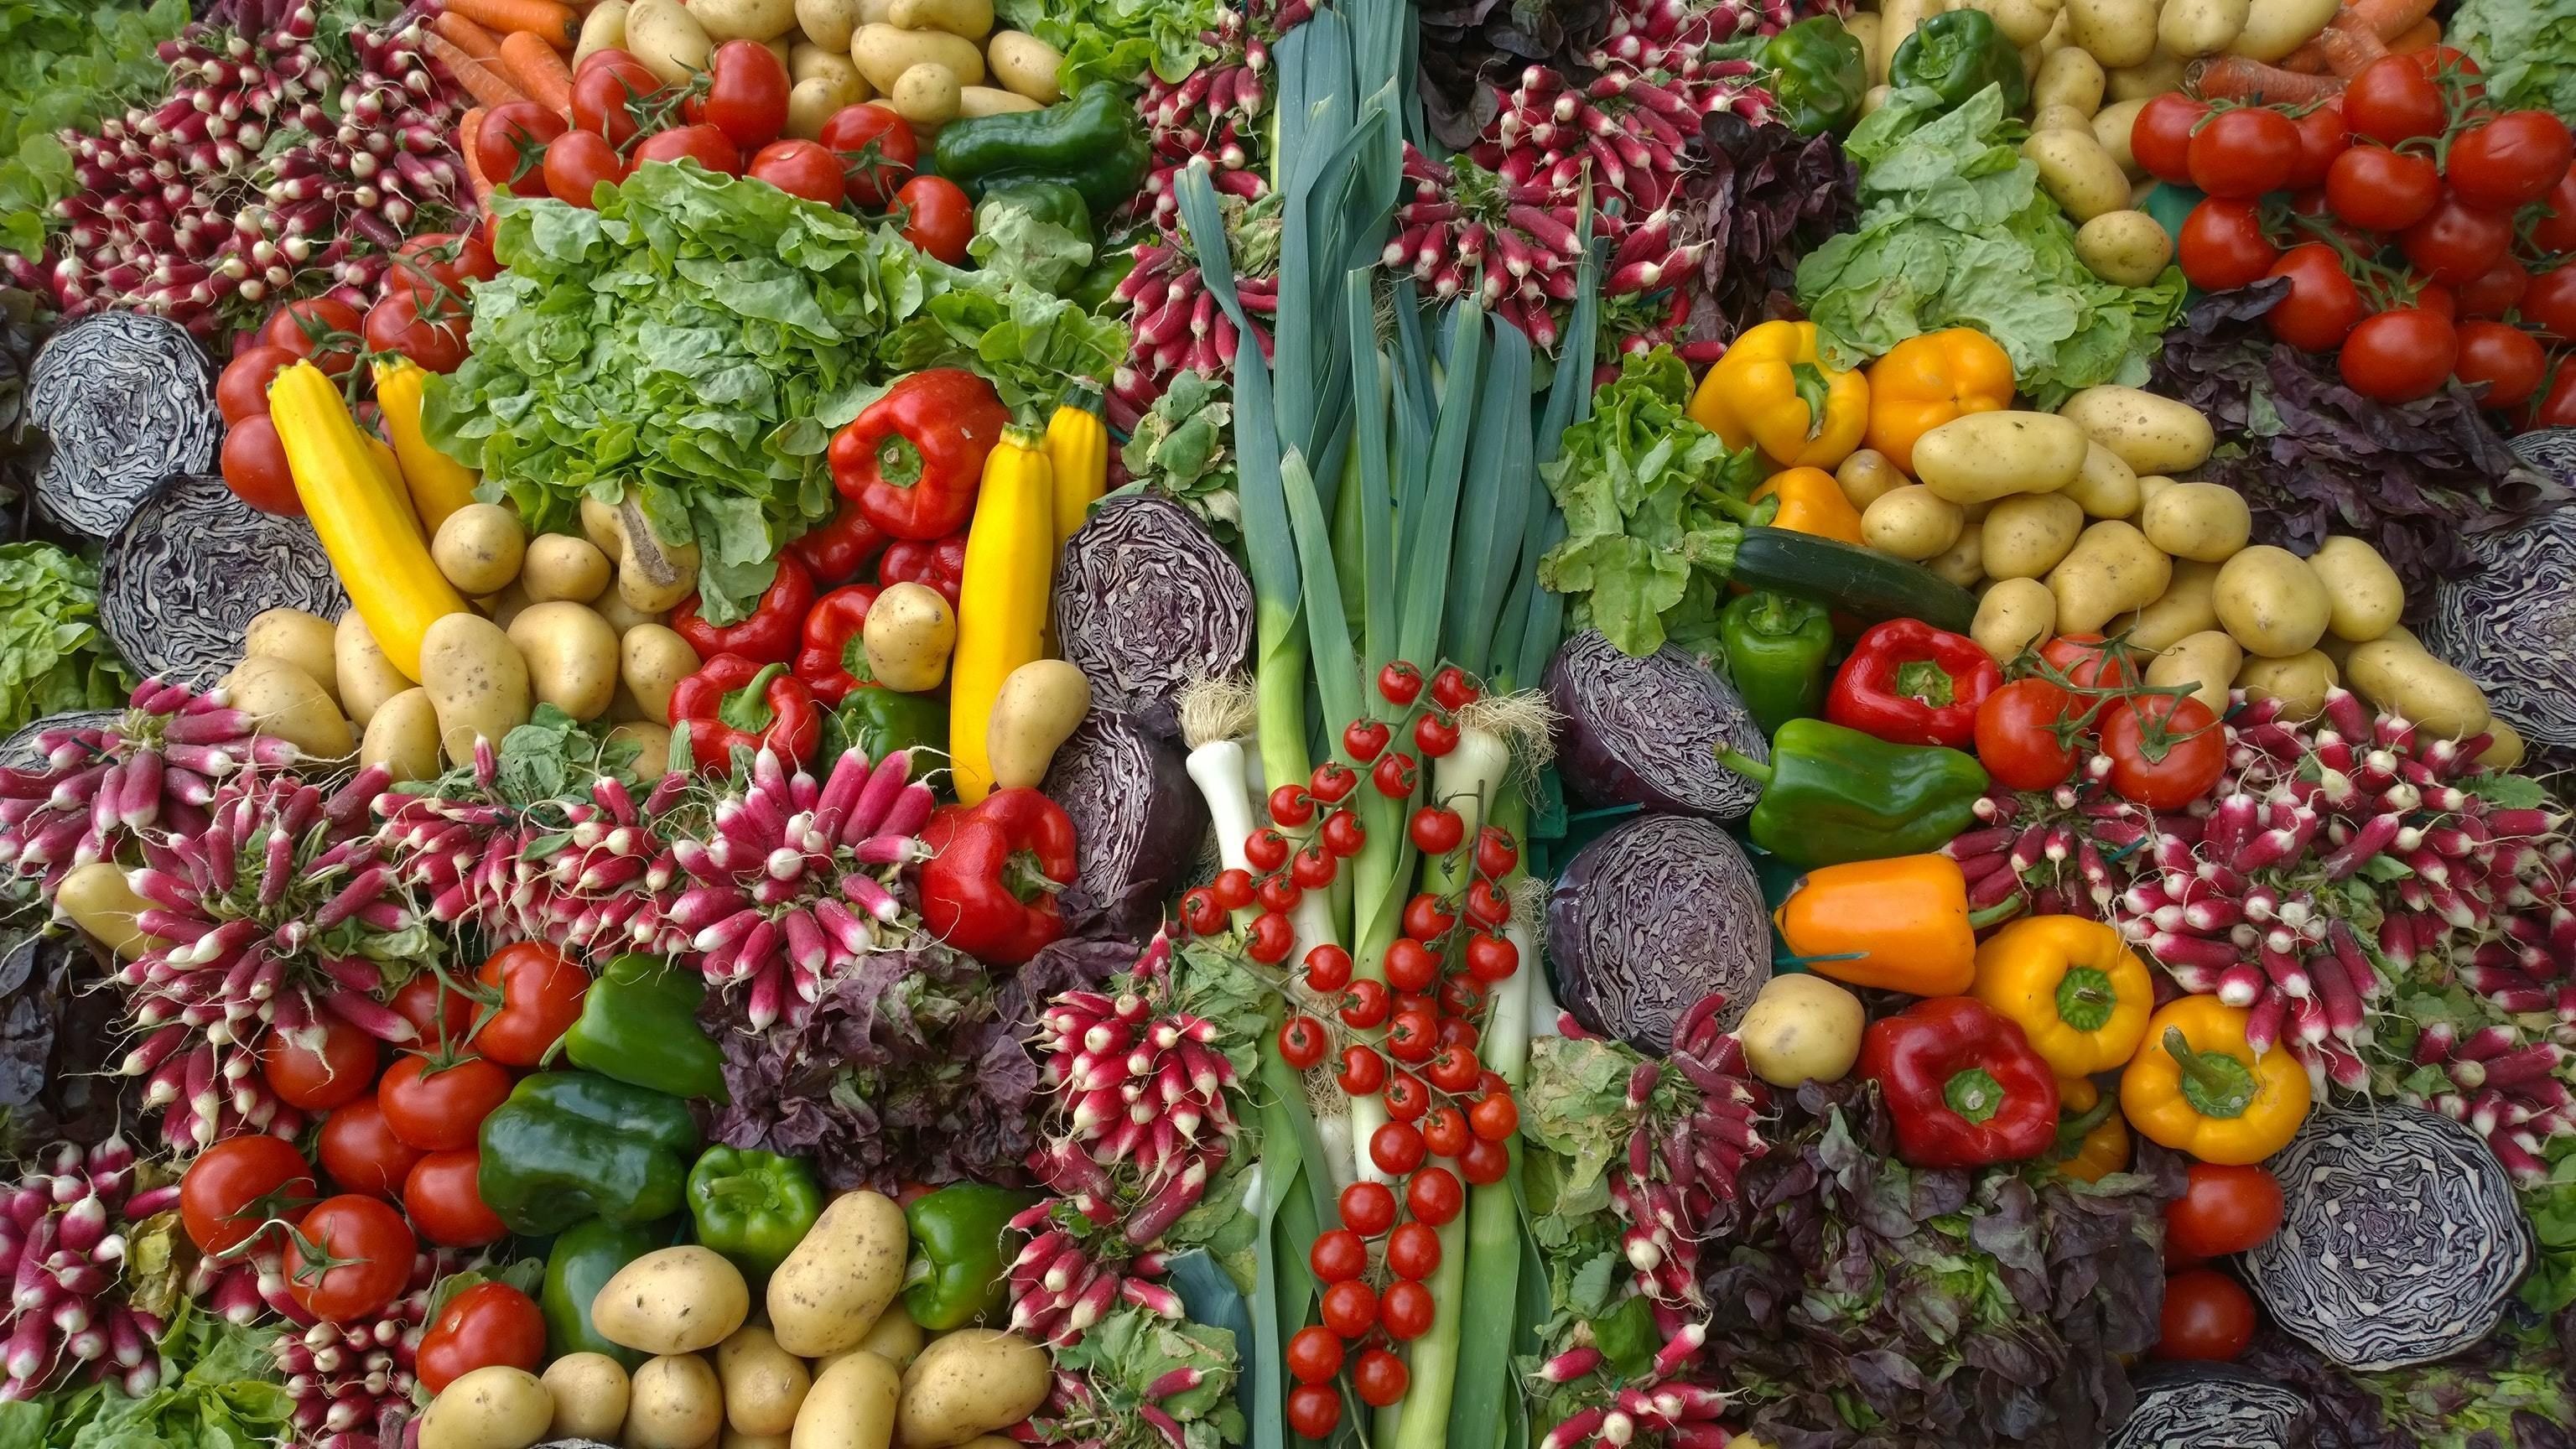 Background image of mixed produce